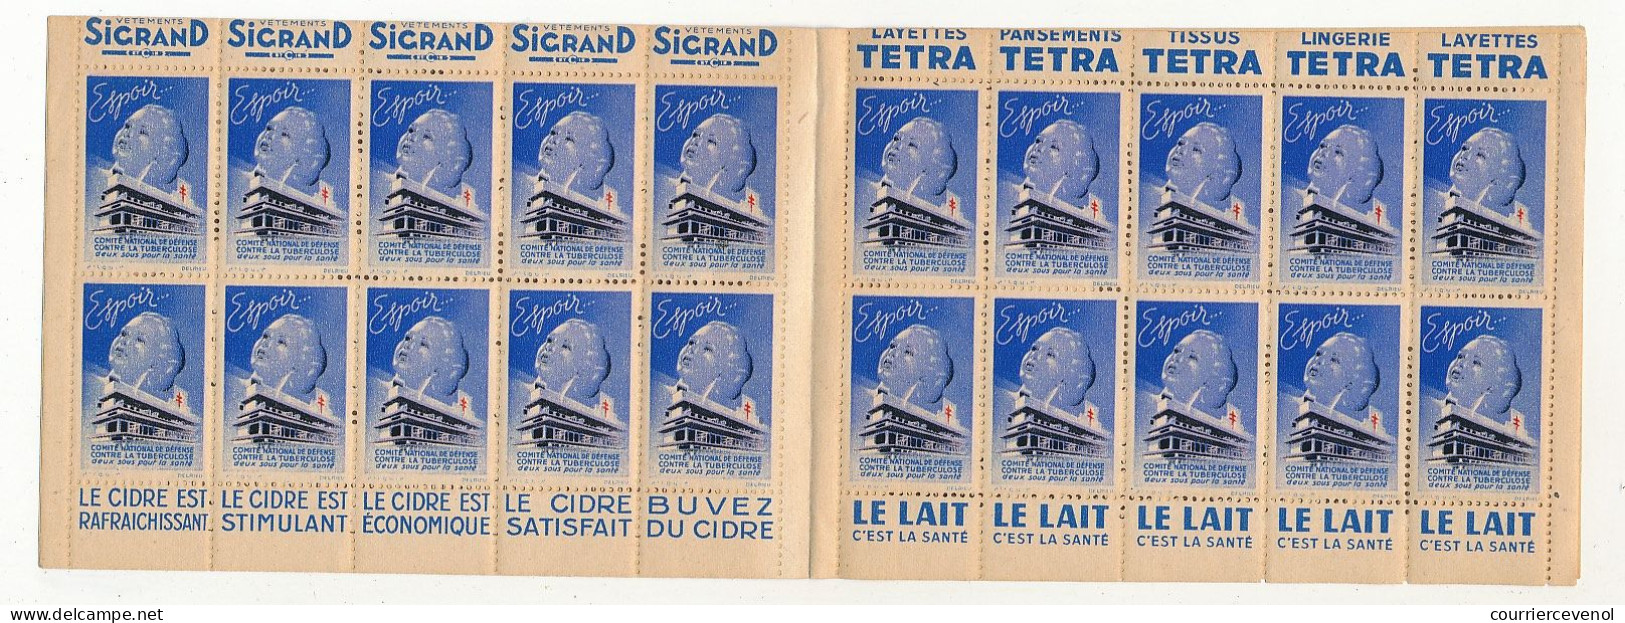 Carnet Anti-tuberculeux 1939 - 13ème Campagne - 2 Fr - 20 Timbres à 10c  - Pubs Sigrand, Cidre, Tissus Tetra, Lait... - Blocks & Sheetlets & Booklets